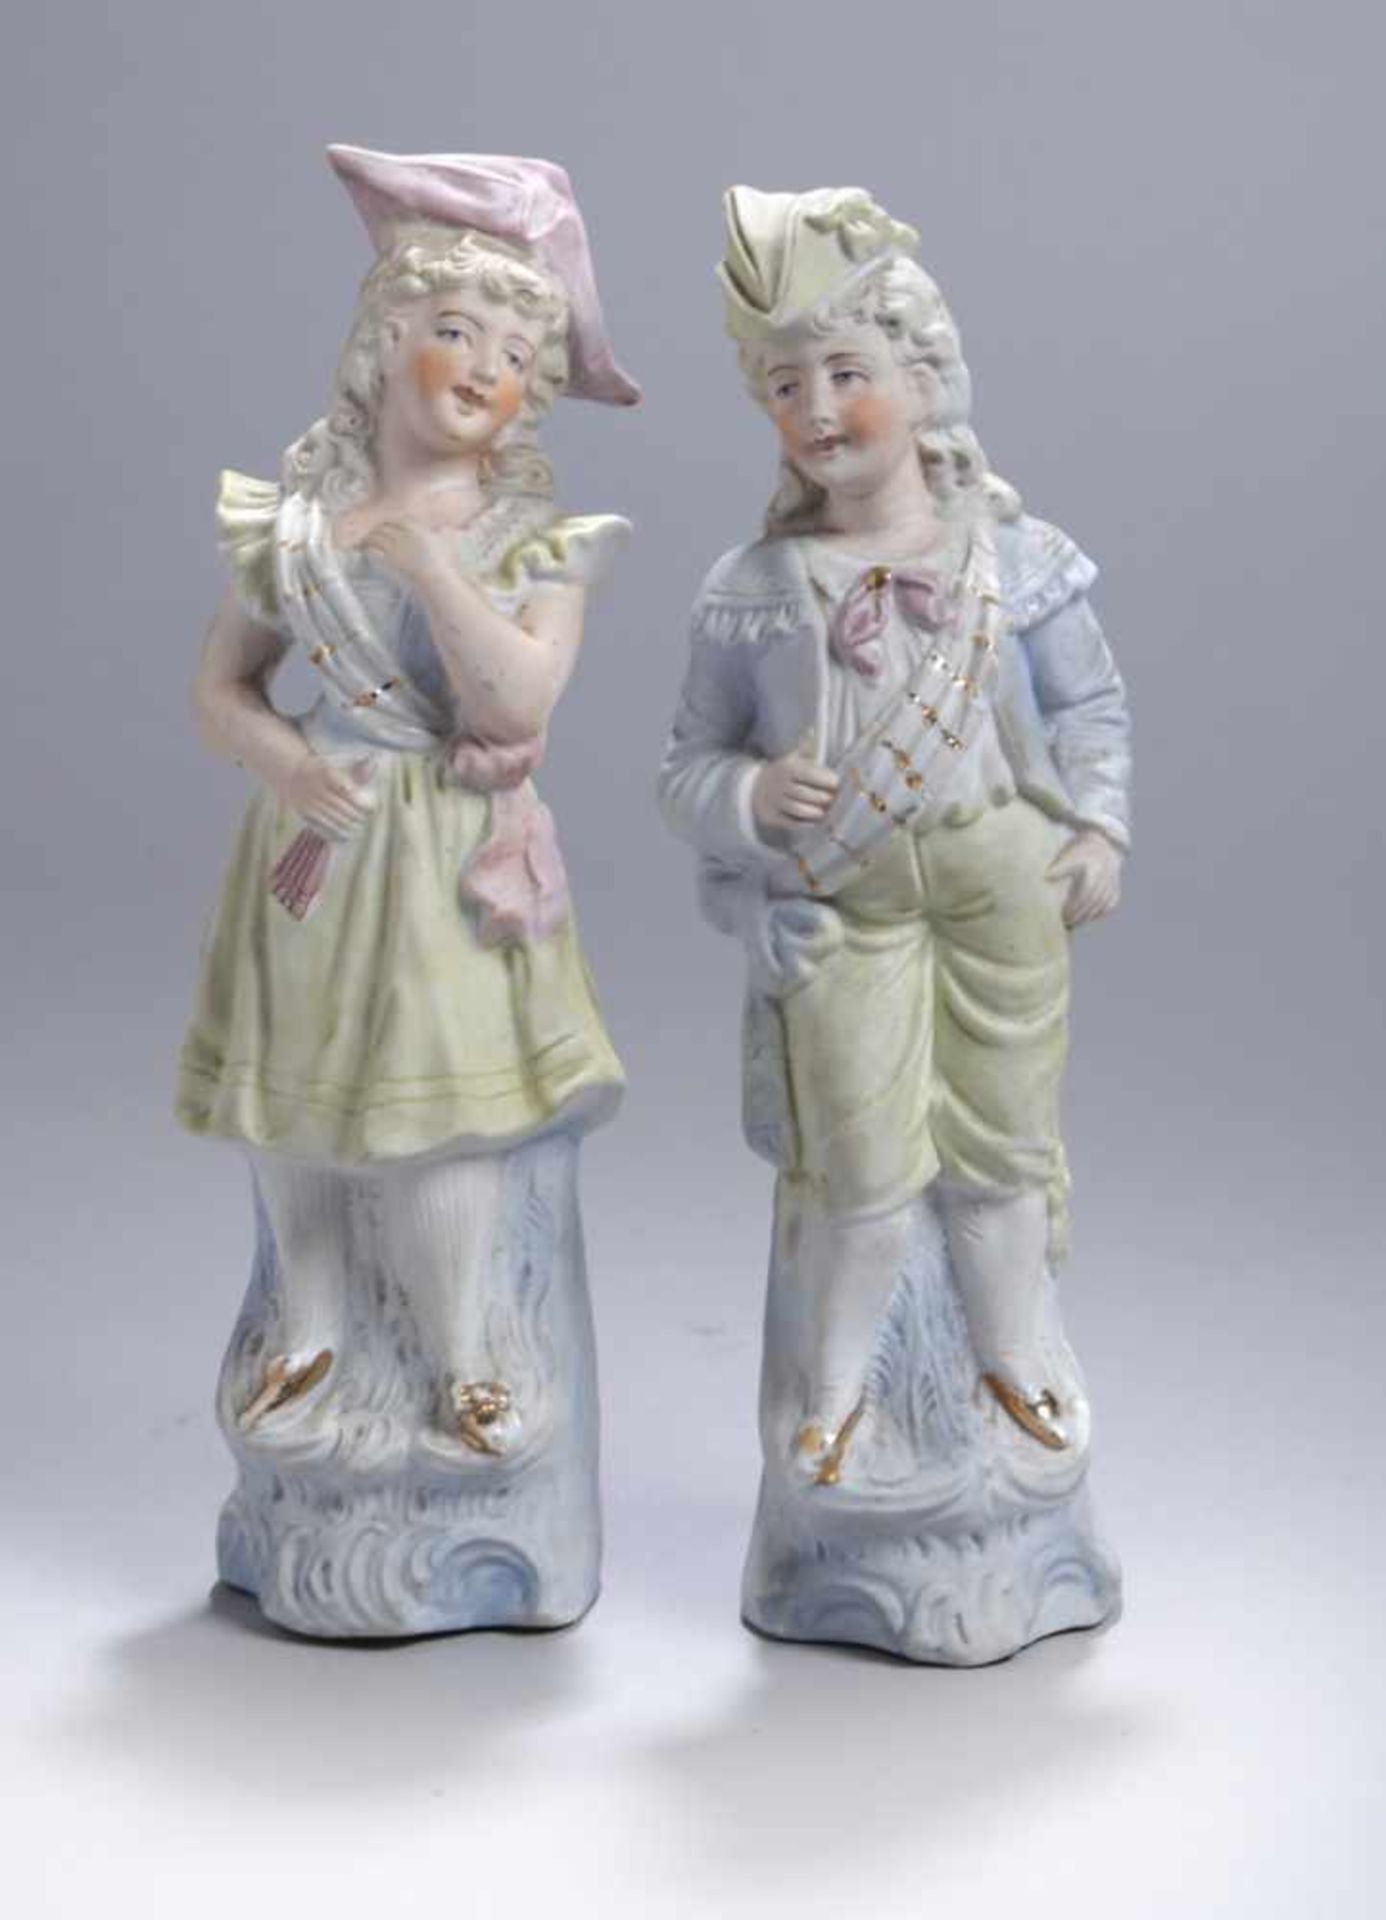 Ein Paar Bisquitporzellan-Figuren, "Junge Dame und Kavalier", 20. Jh., vollplastische,stehende